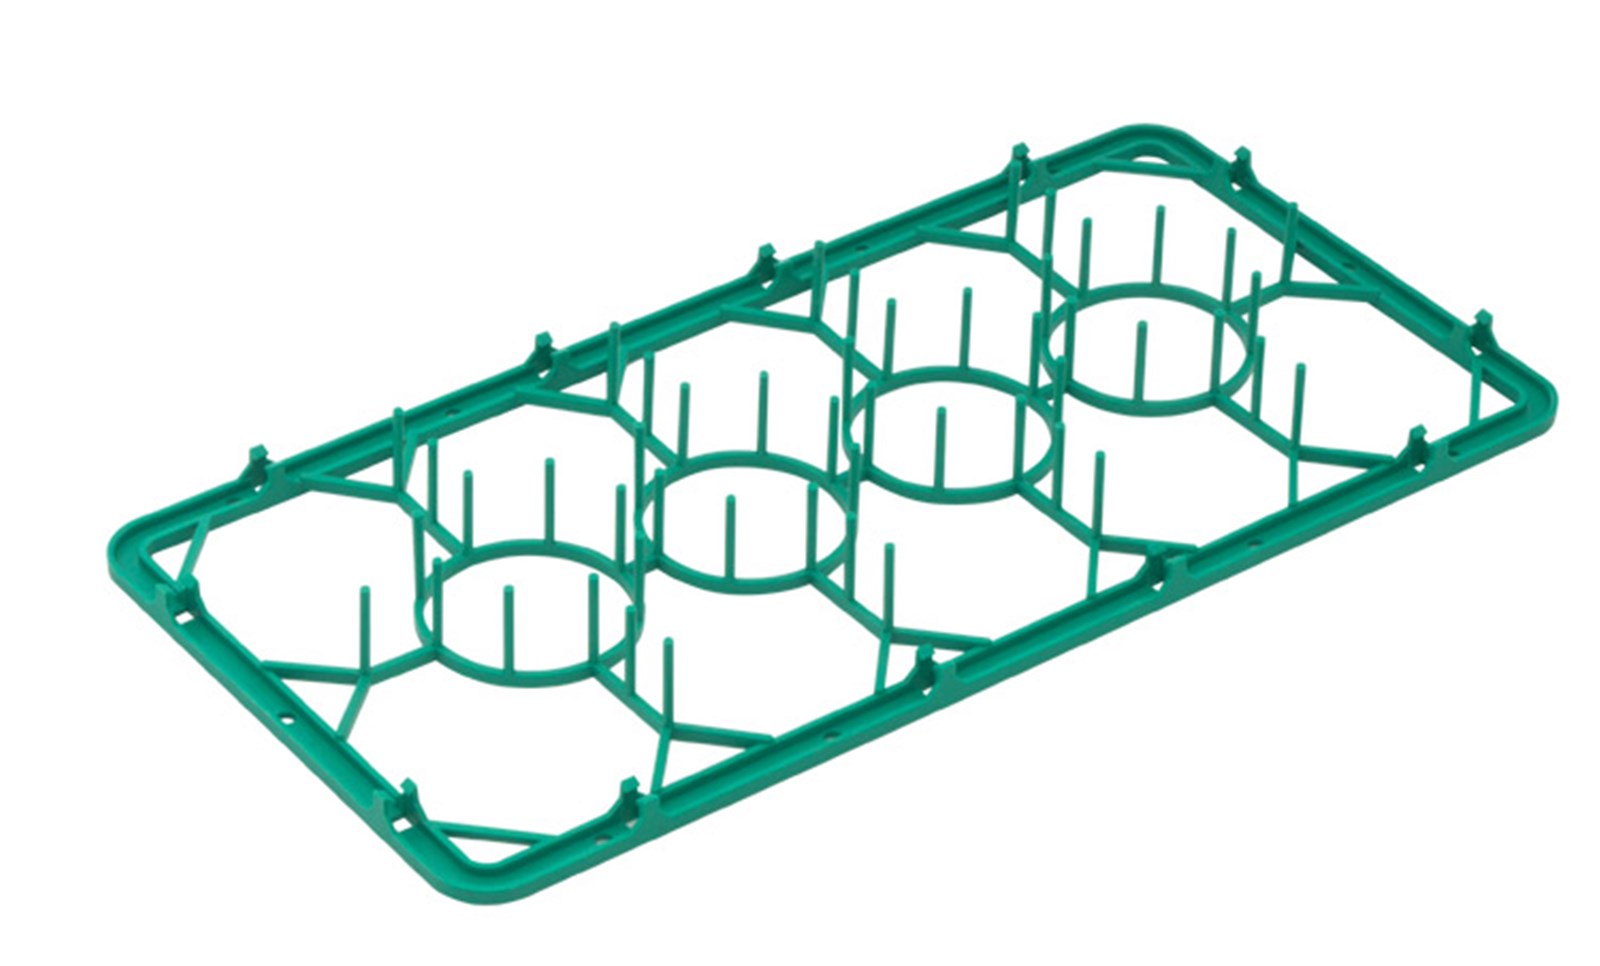 Einsatz grün in halben Korb 50x25cm für Tasssen 14 Fächer - KAQTU Design